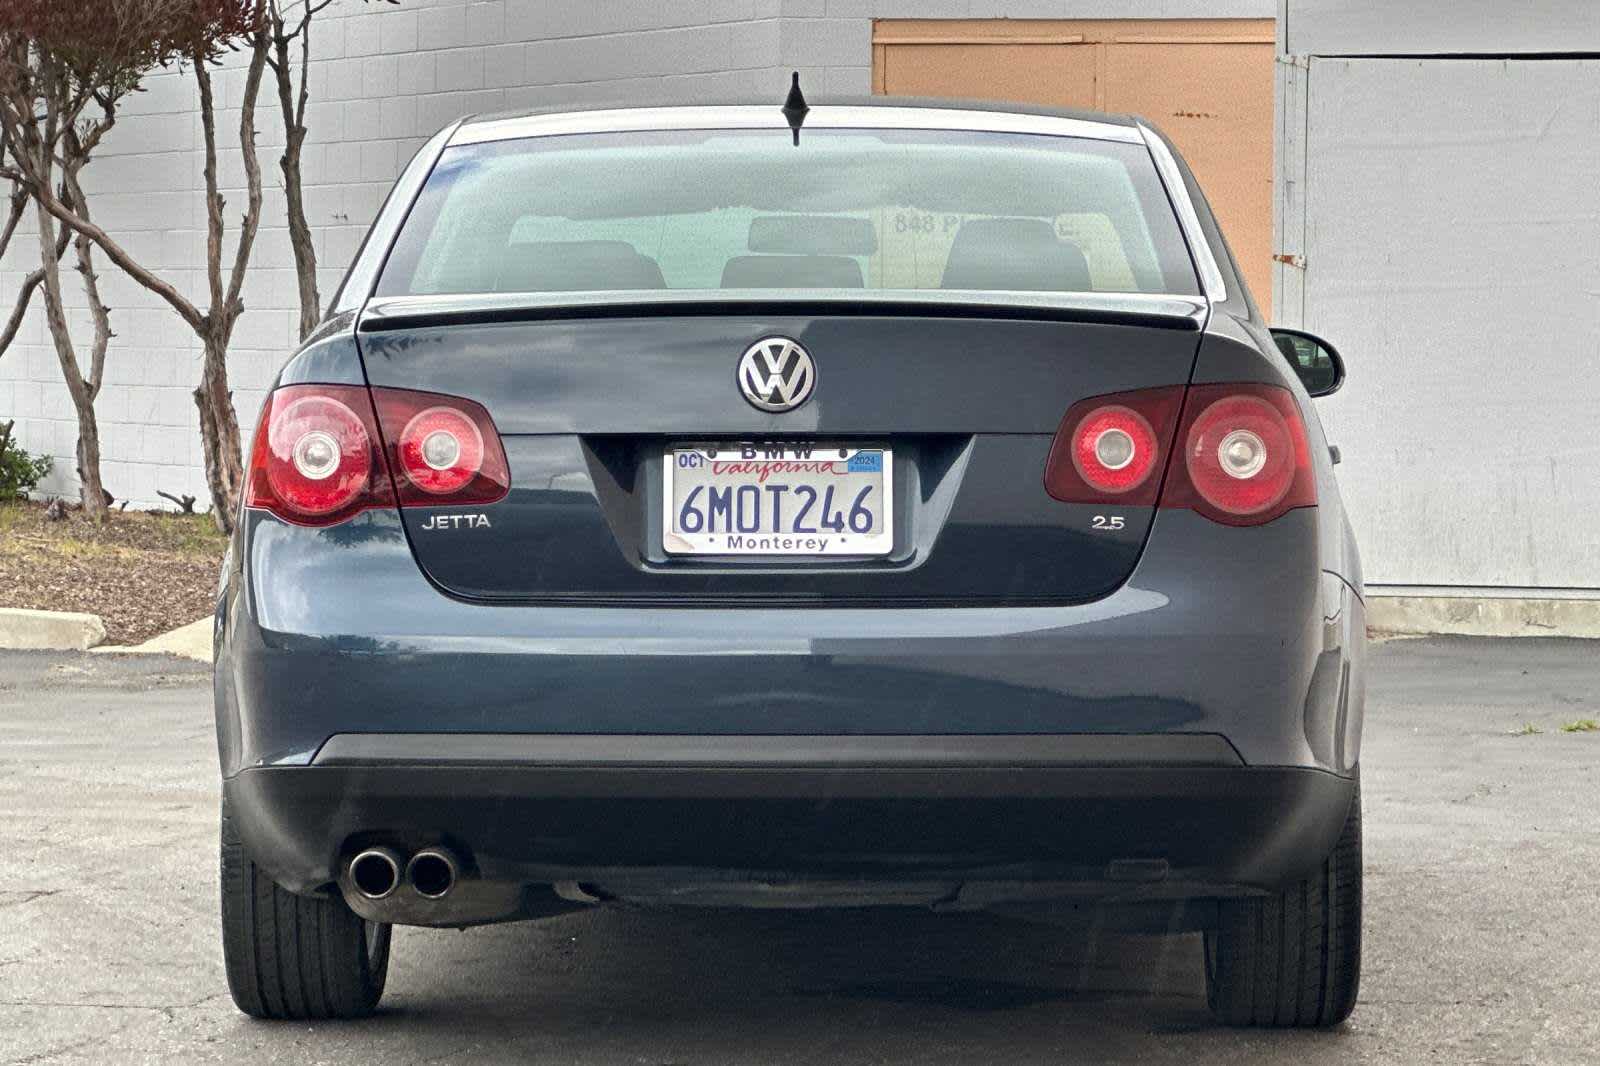 2010 Volkswagen Jetta Limited Edition 8